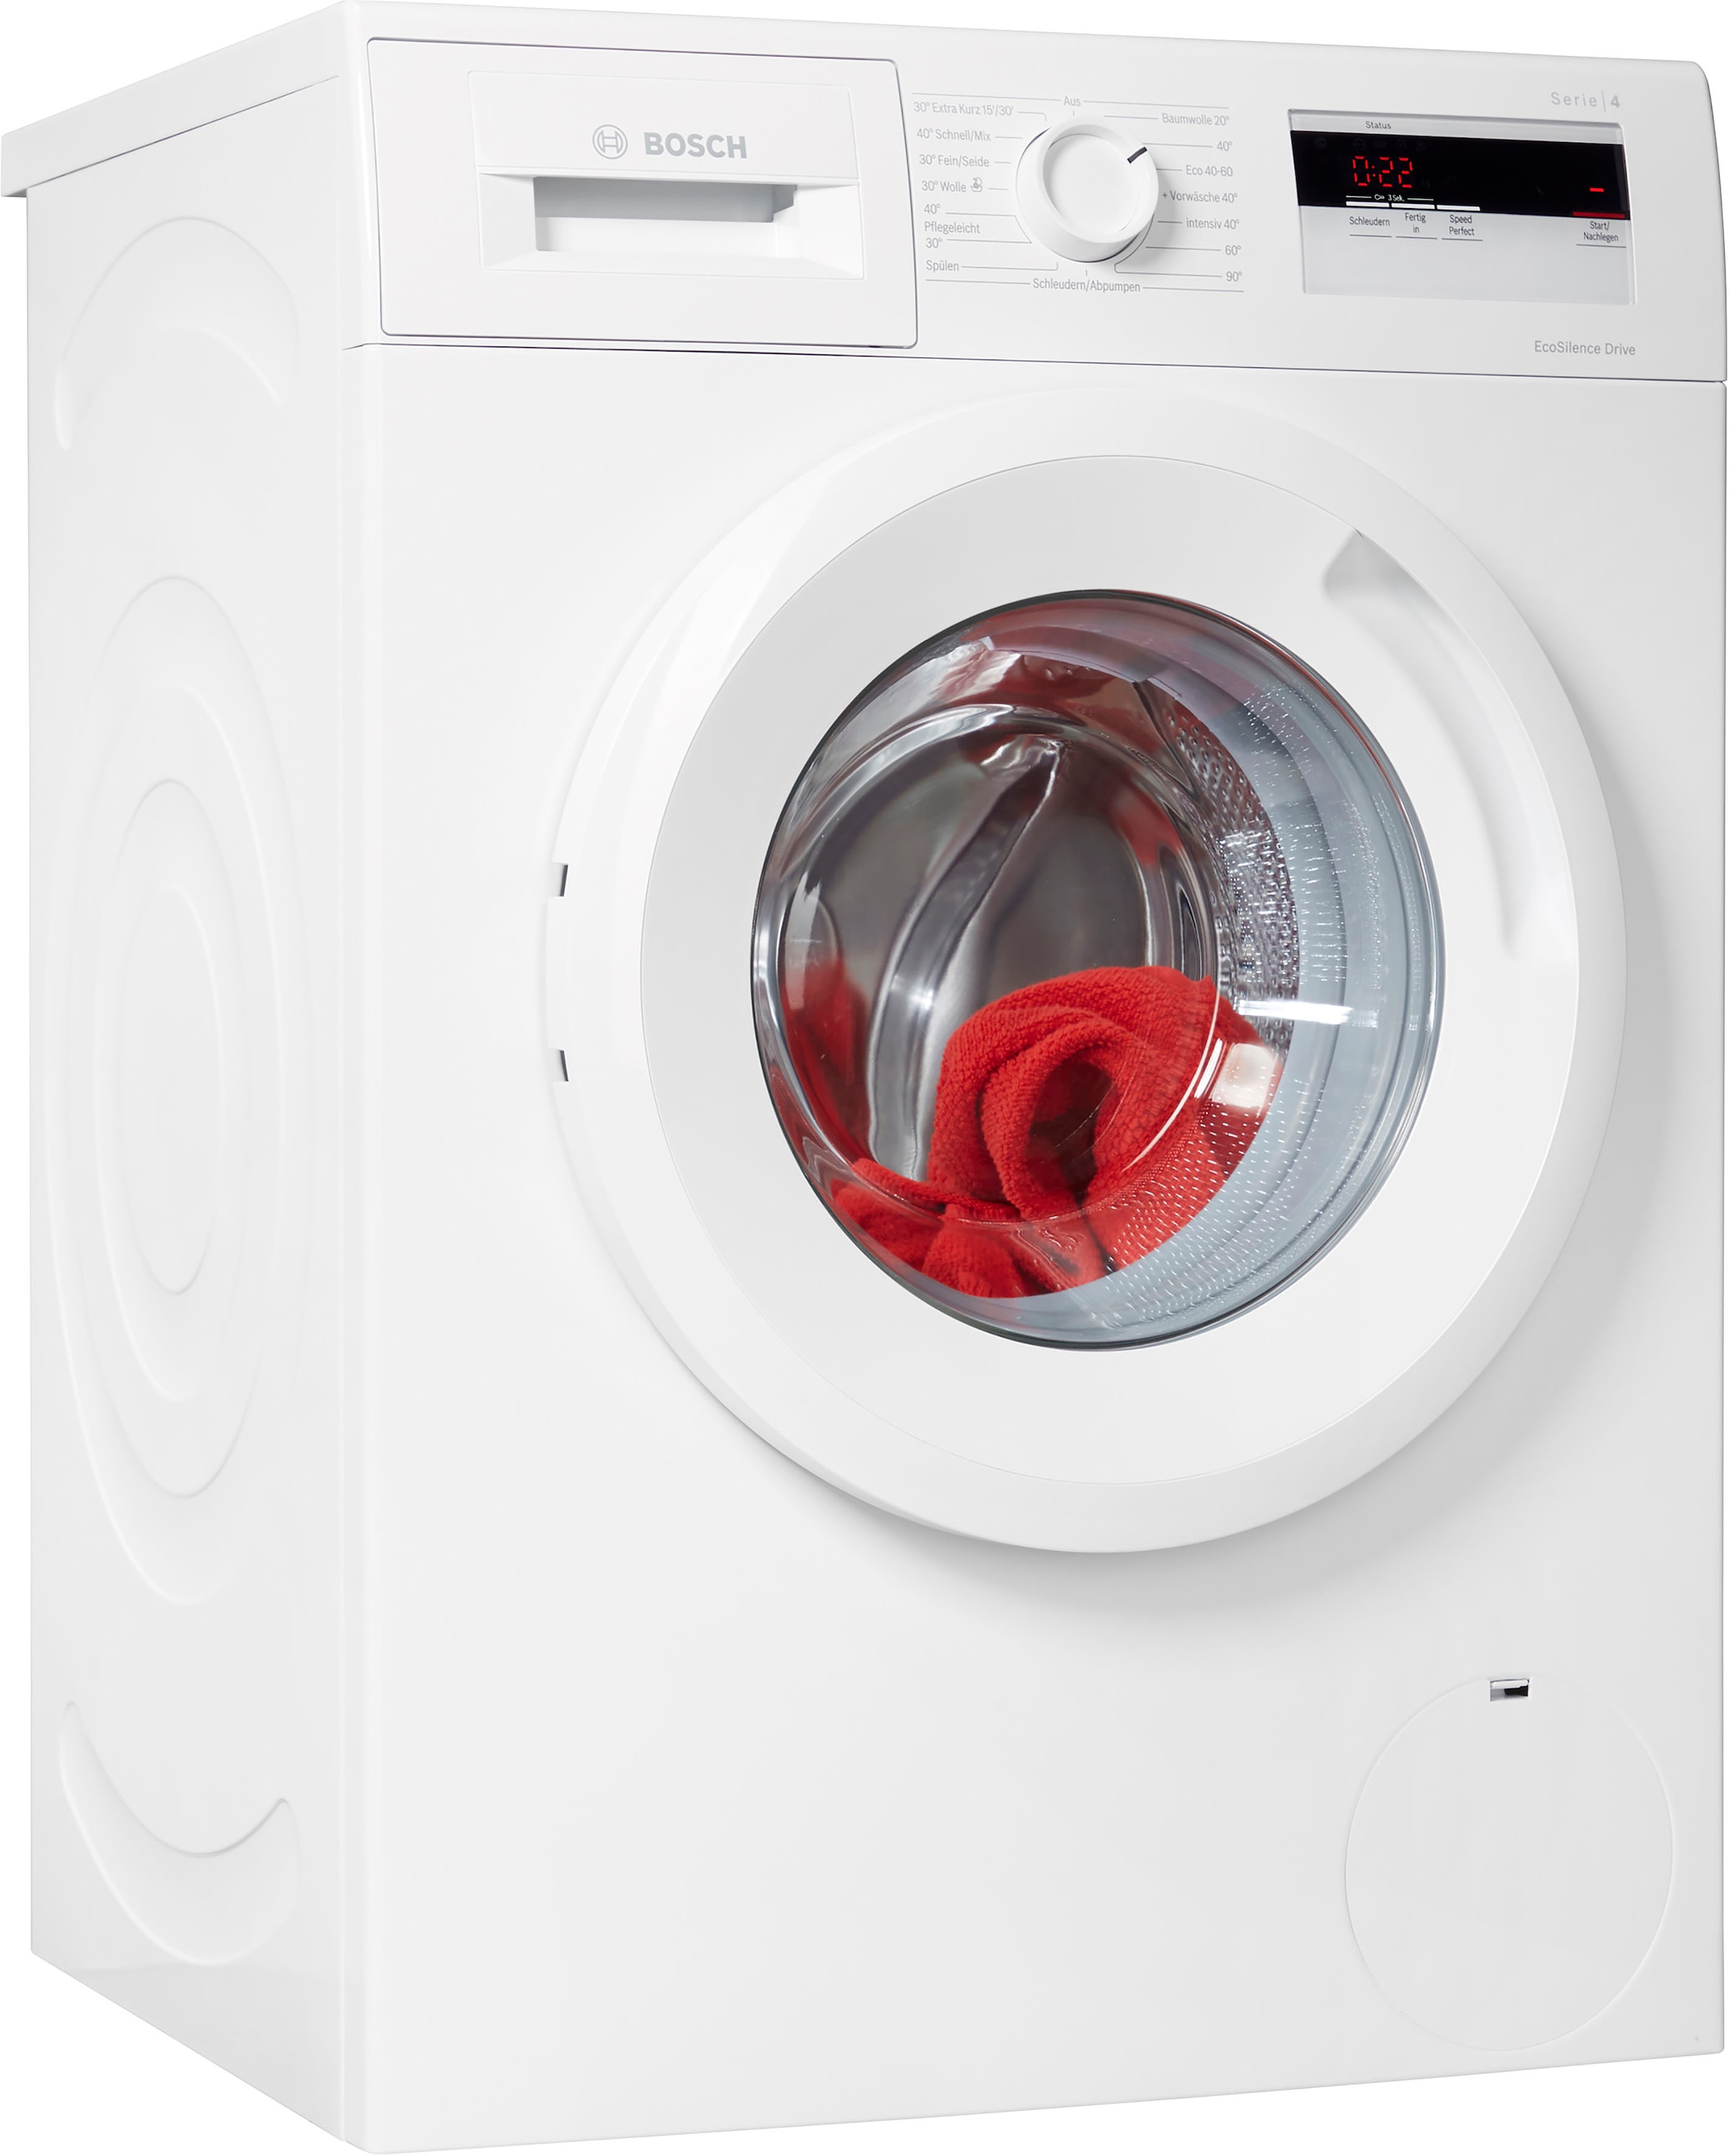 BOSCH Waschmaschine online WAN280A2, »WAN280A2«, 1400 U/min kaufen 7 kg, 4